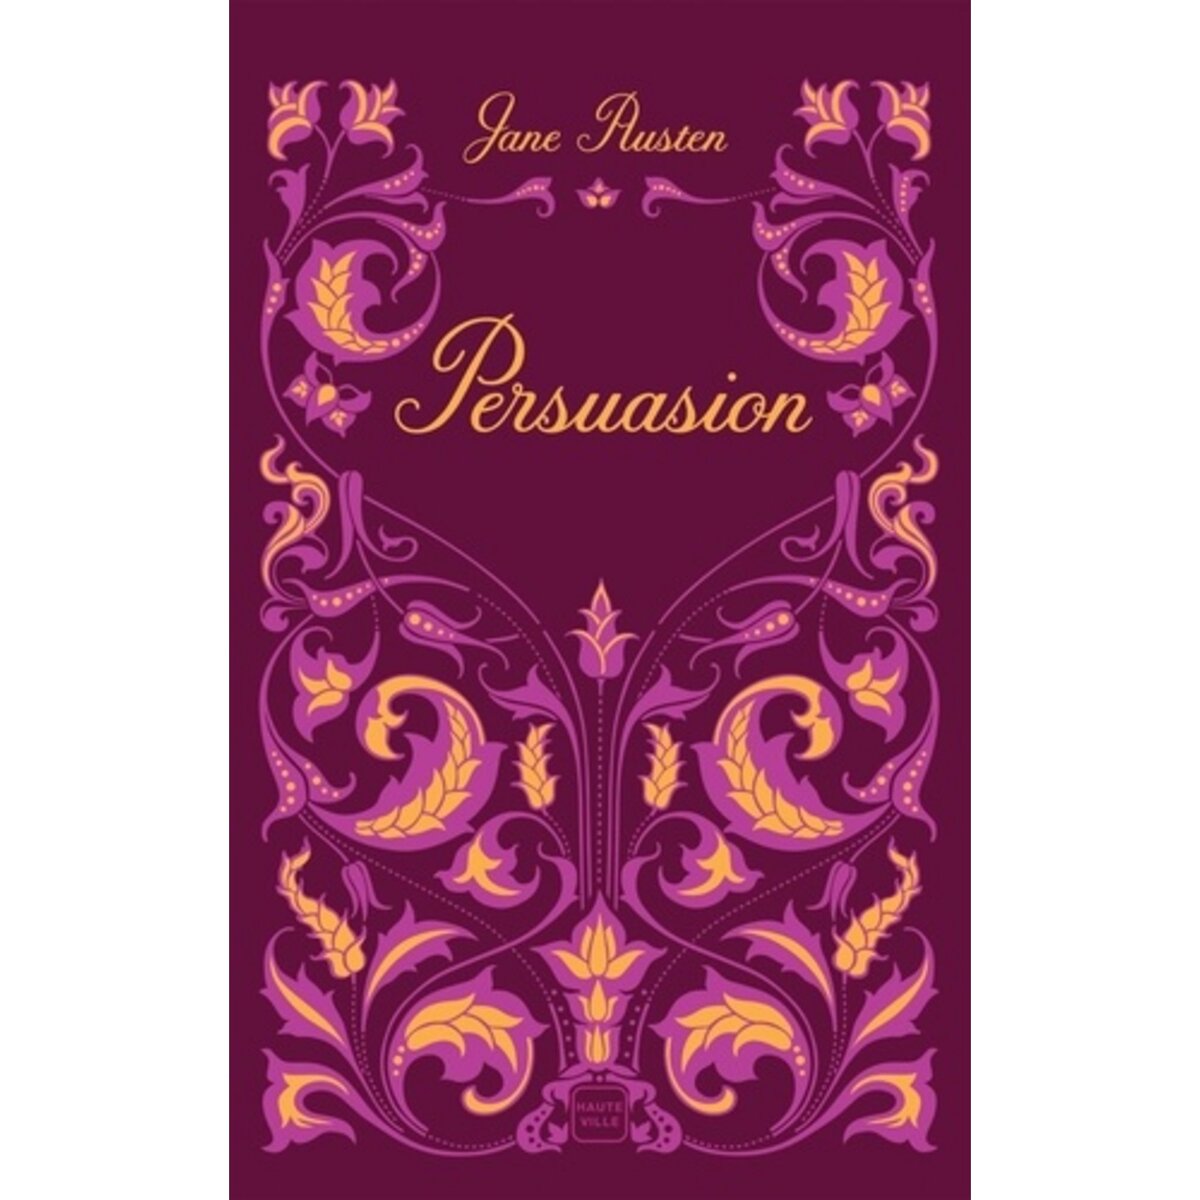  PERSUASION, Austen Jane